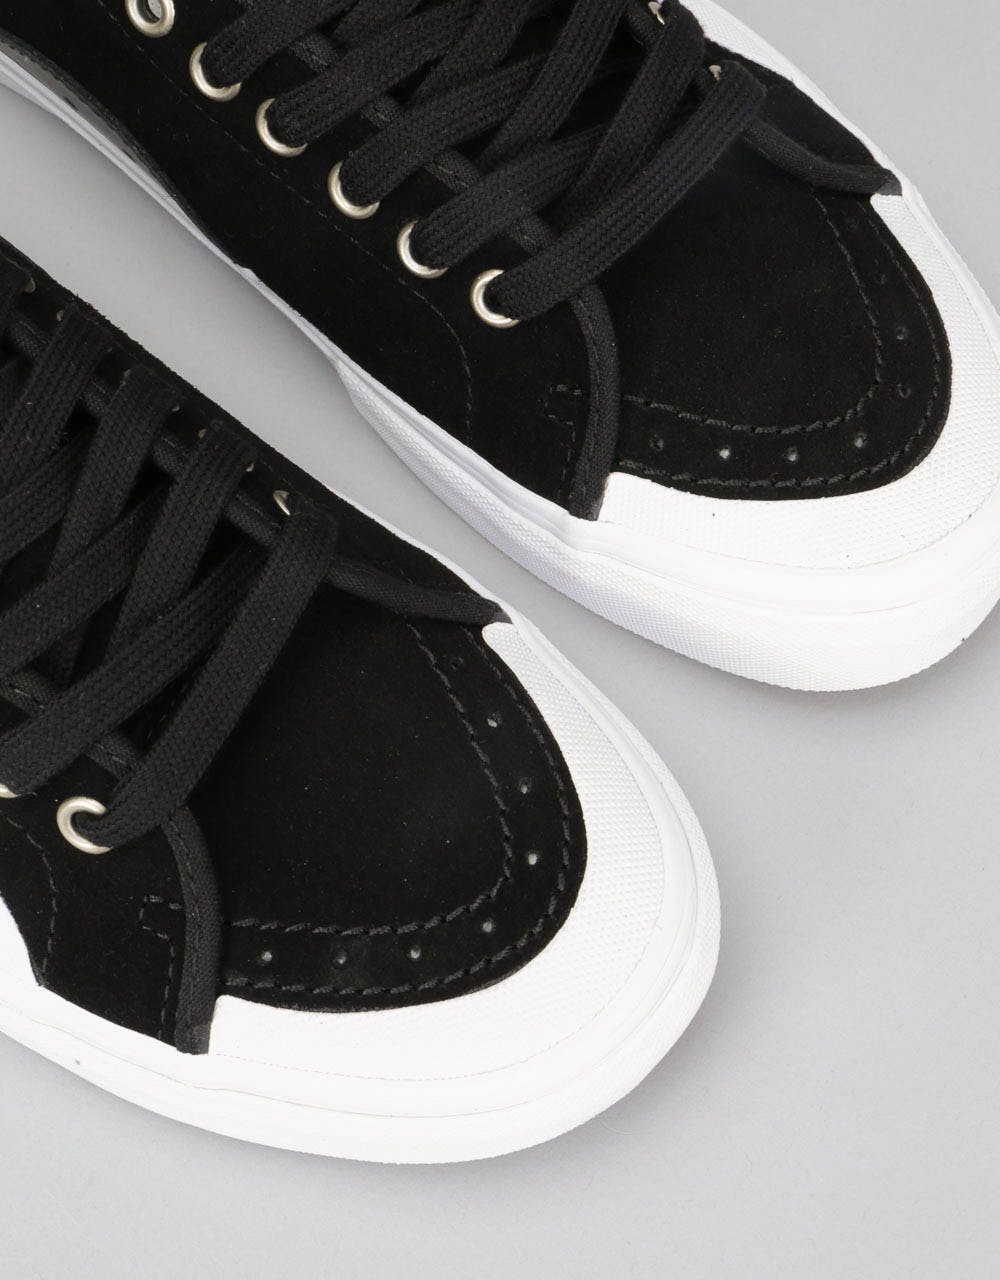 Vans AV Classic Skate Shoes - (Rubber) Black/White